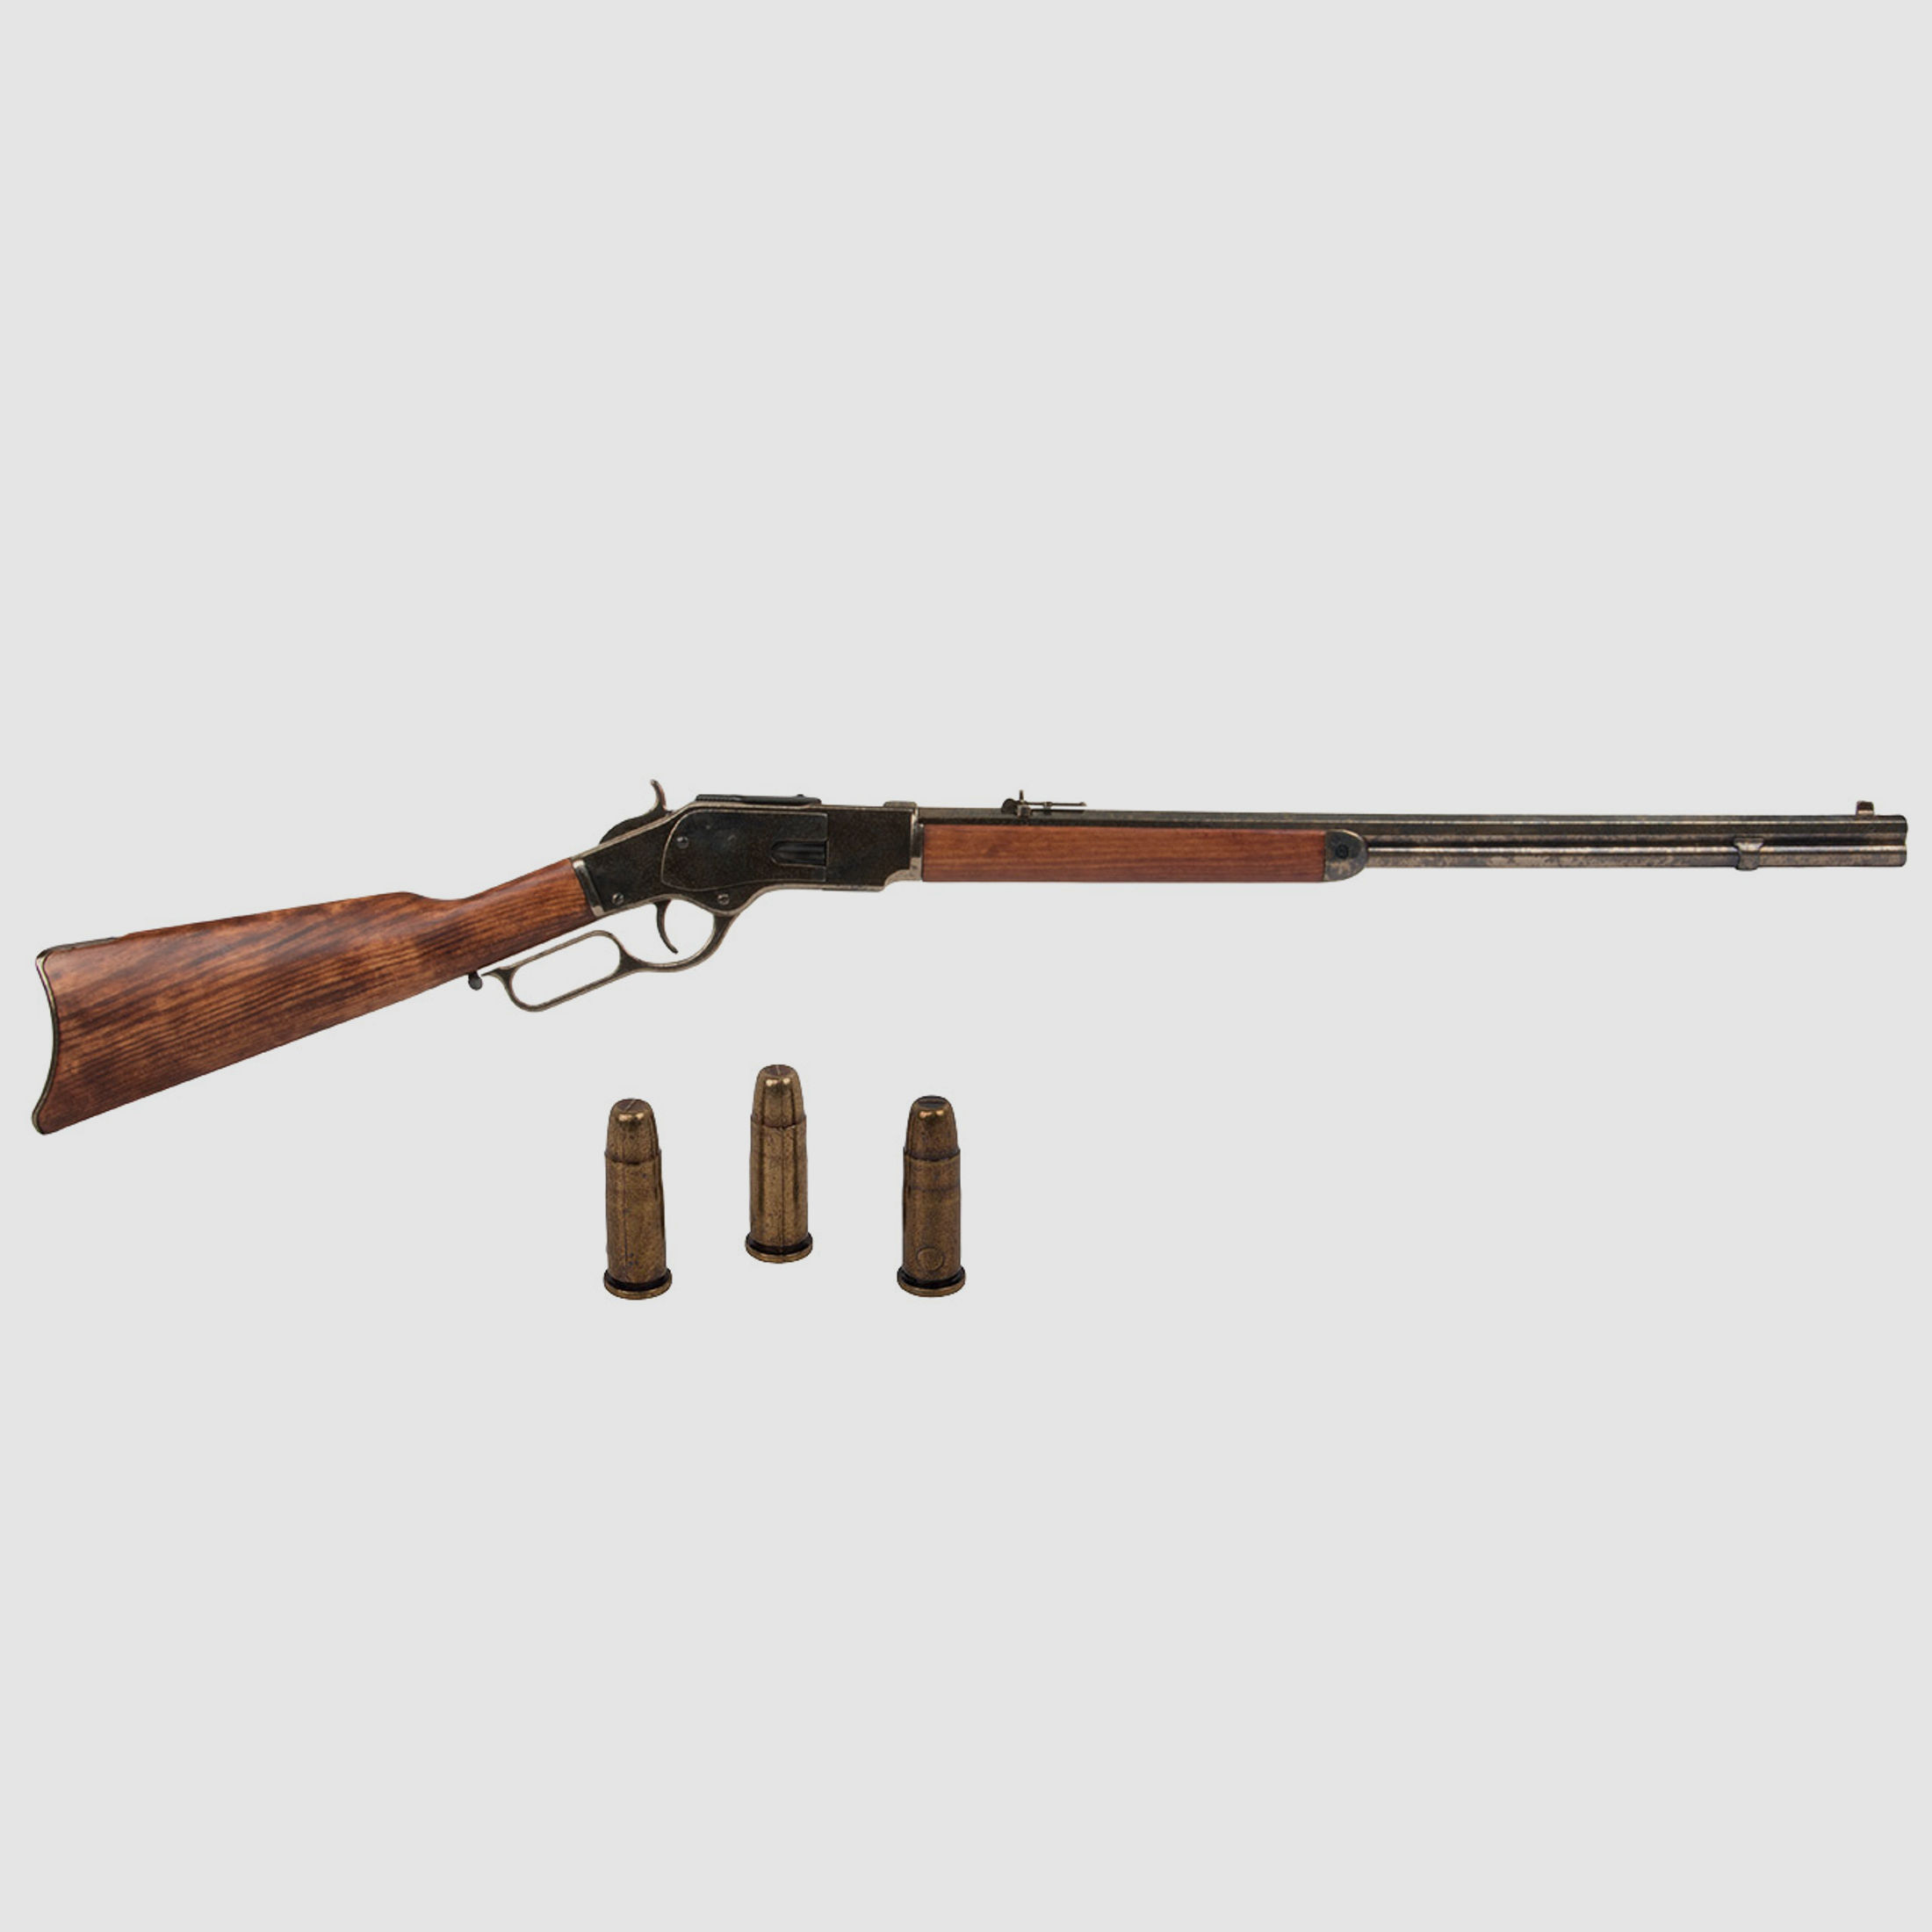 Deko Westerngewehr Denix Winchester Mod. 73 USA 1873 nickel dunkel realistisches Repetieren mit HĂĽlsenauswurf GesamtlĂ¤nge 110 cm